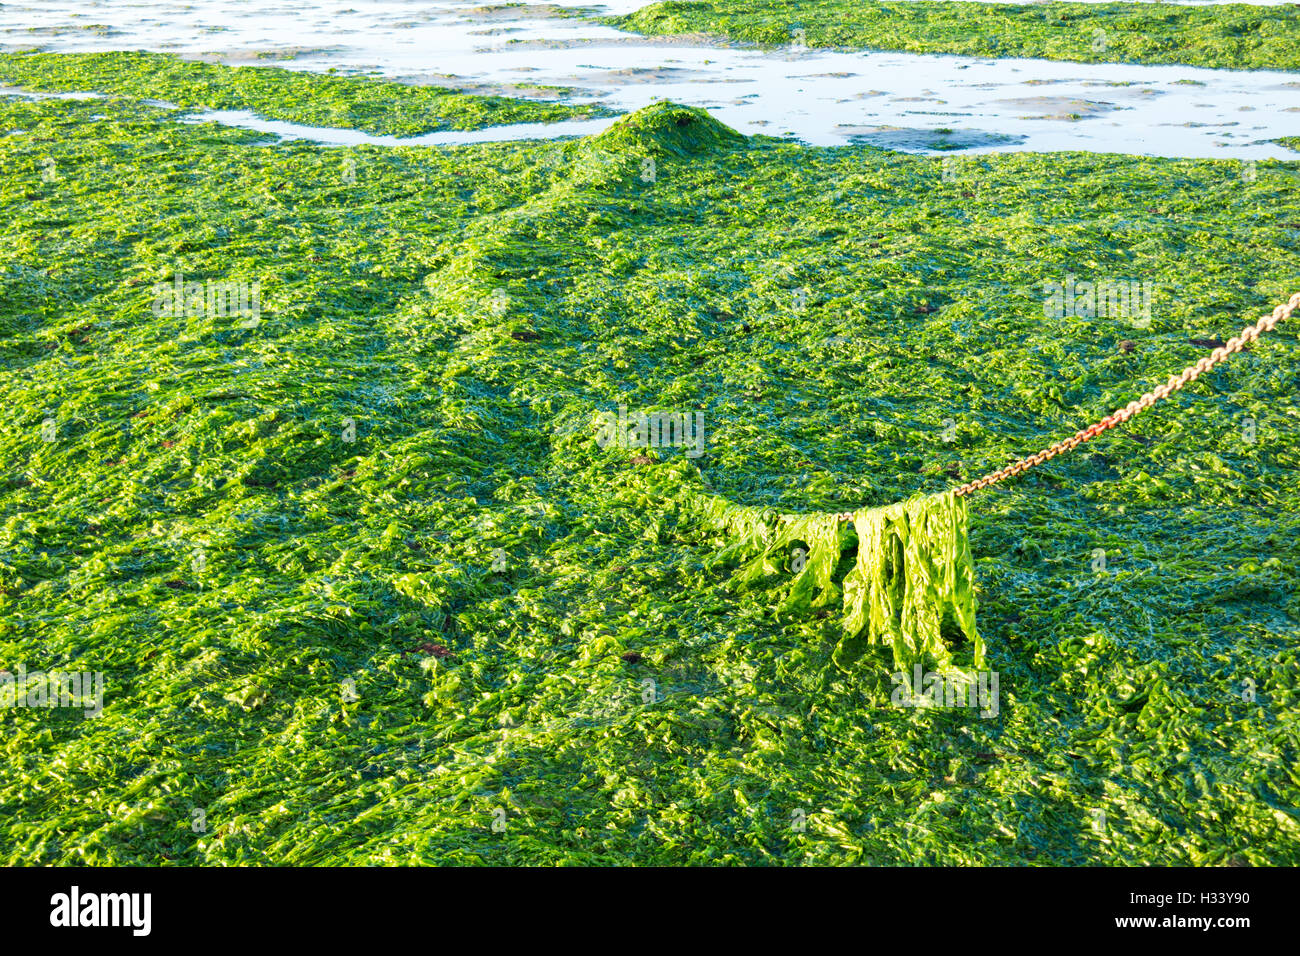 Chaîne d'Ancre couverte de laitue de mer d'eau salée sur les estrans à marée basse de Wadden, Pays-Bas Banque D'Images